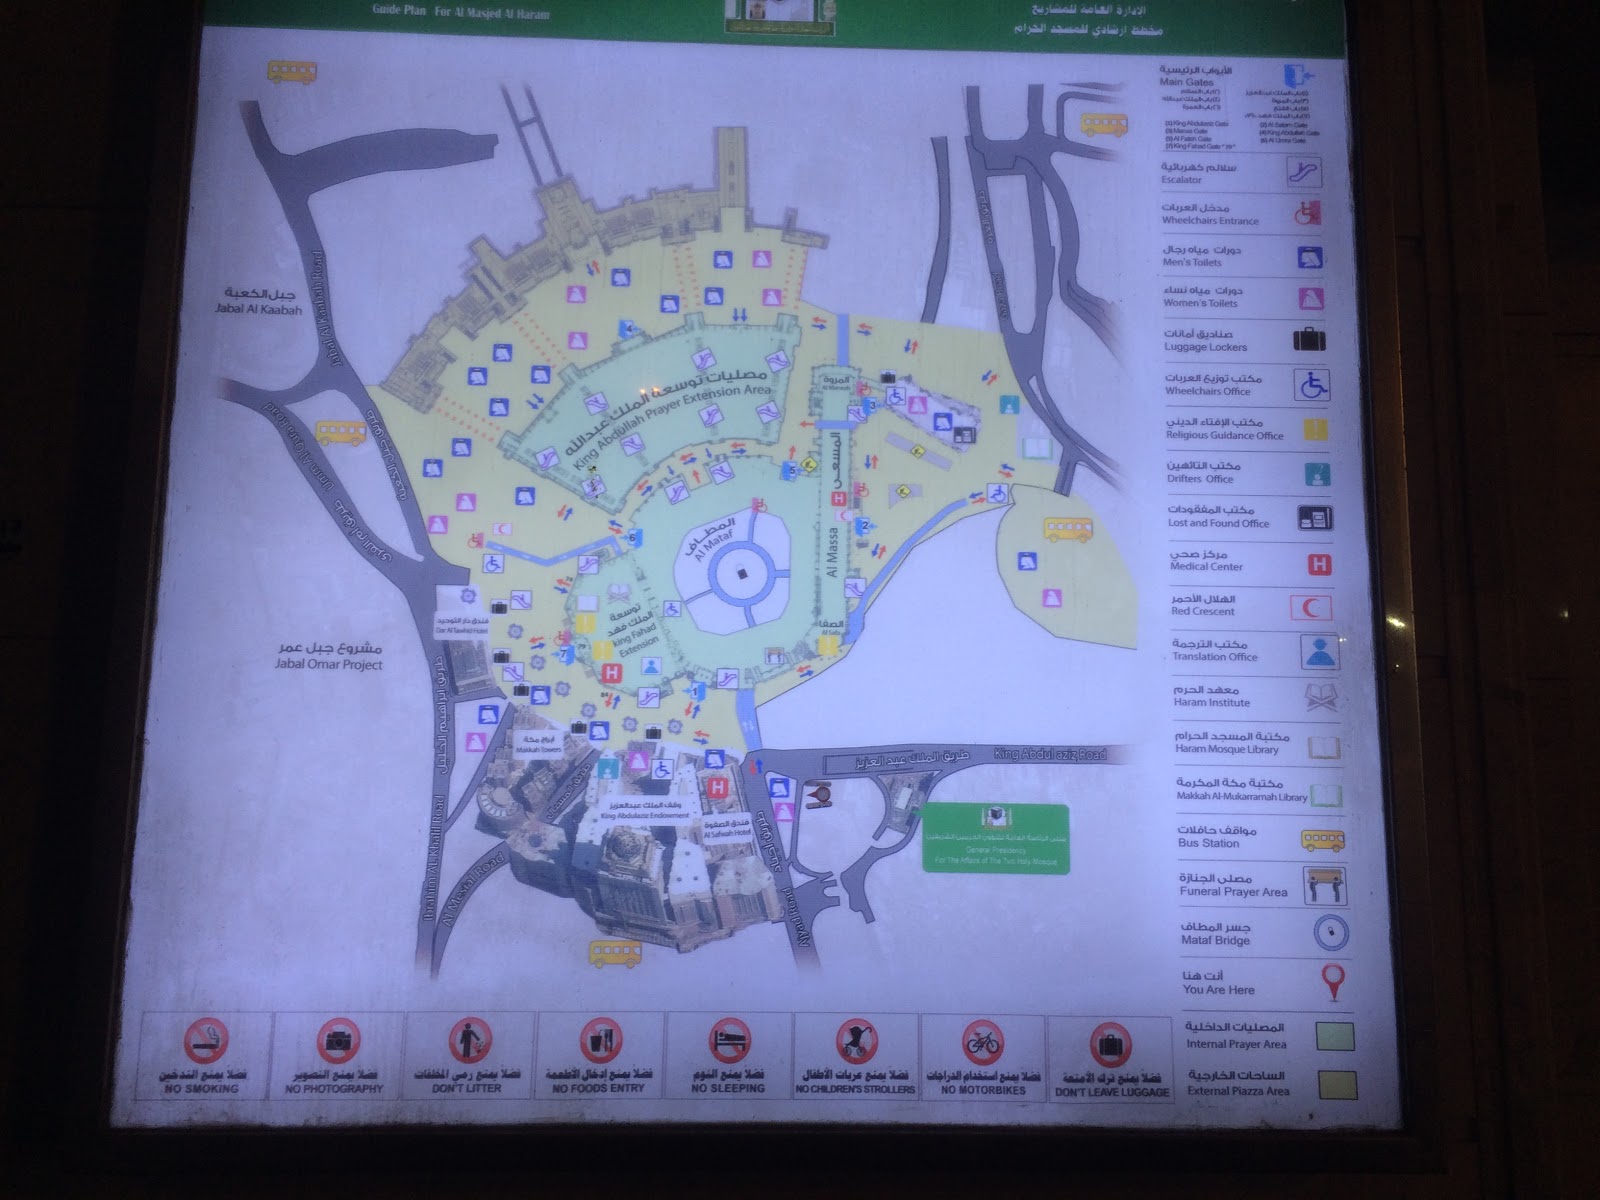 Navigate thru Masjidil Haram: Map of Masjidil Haram